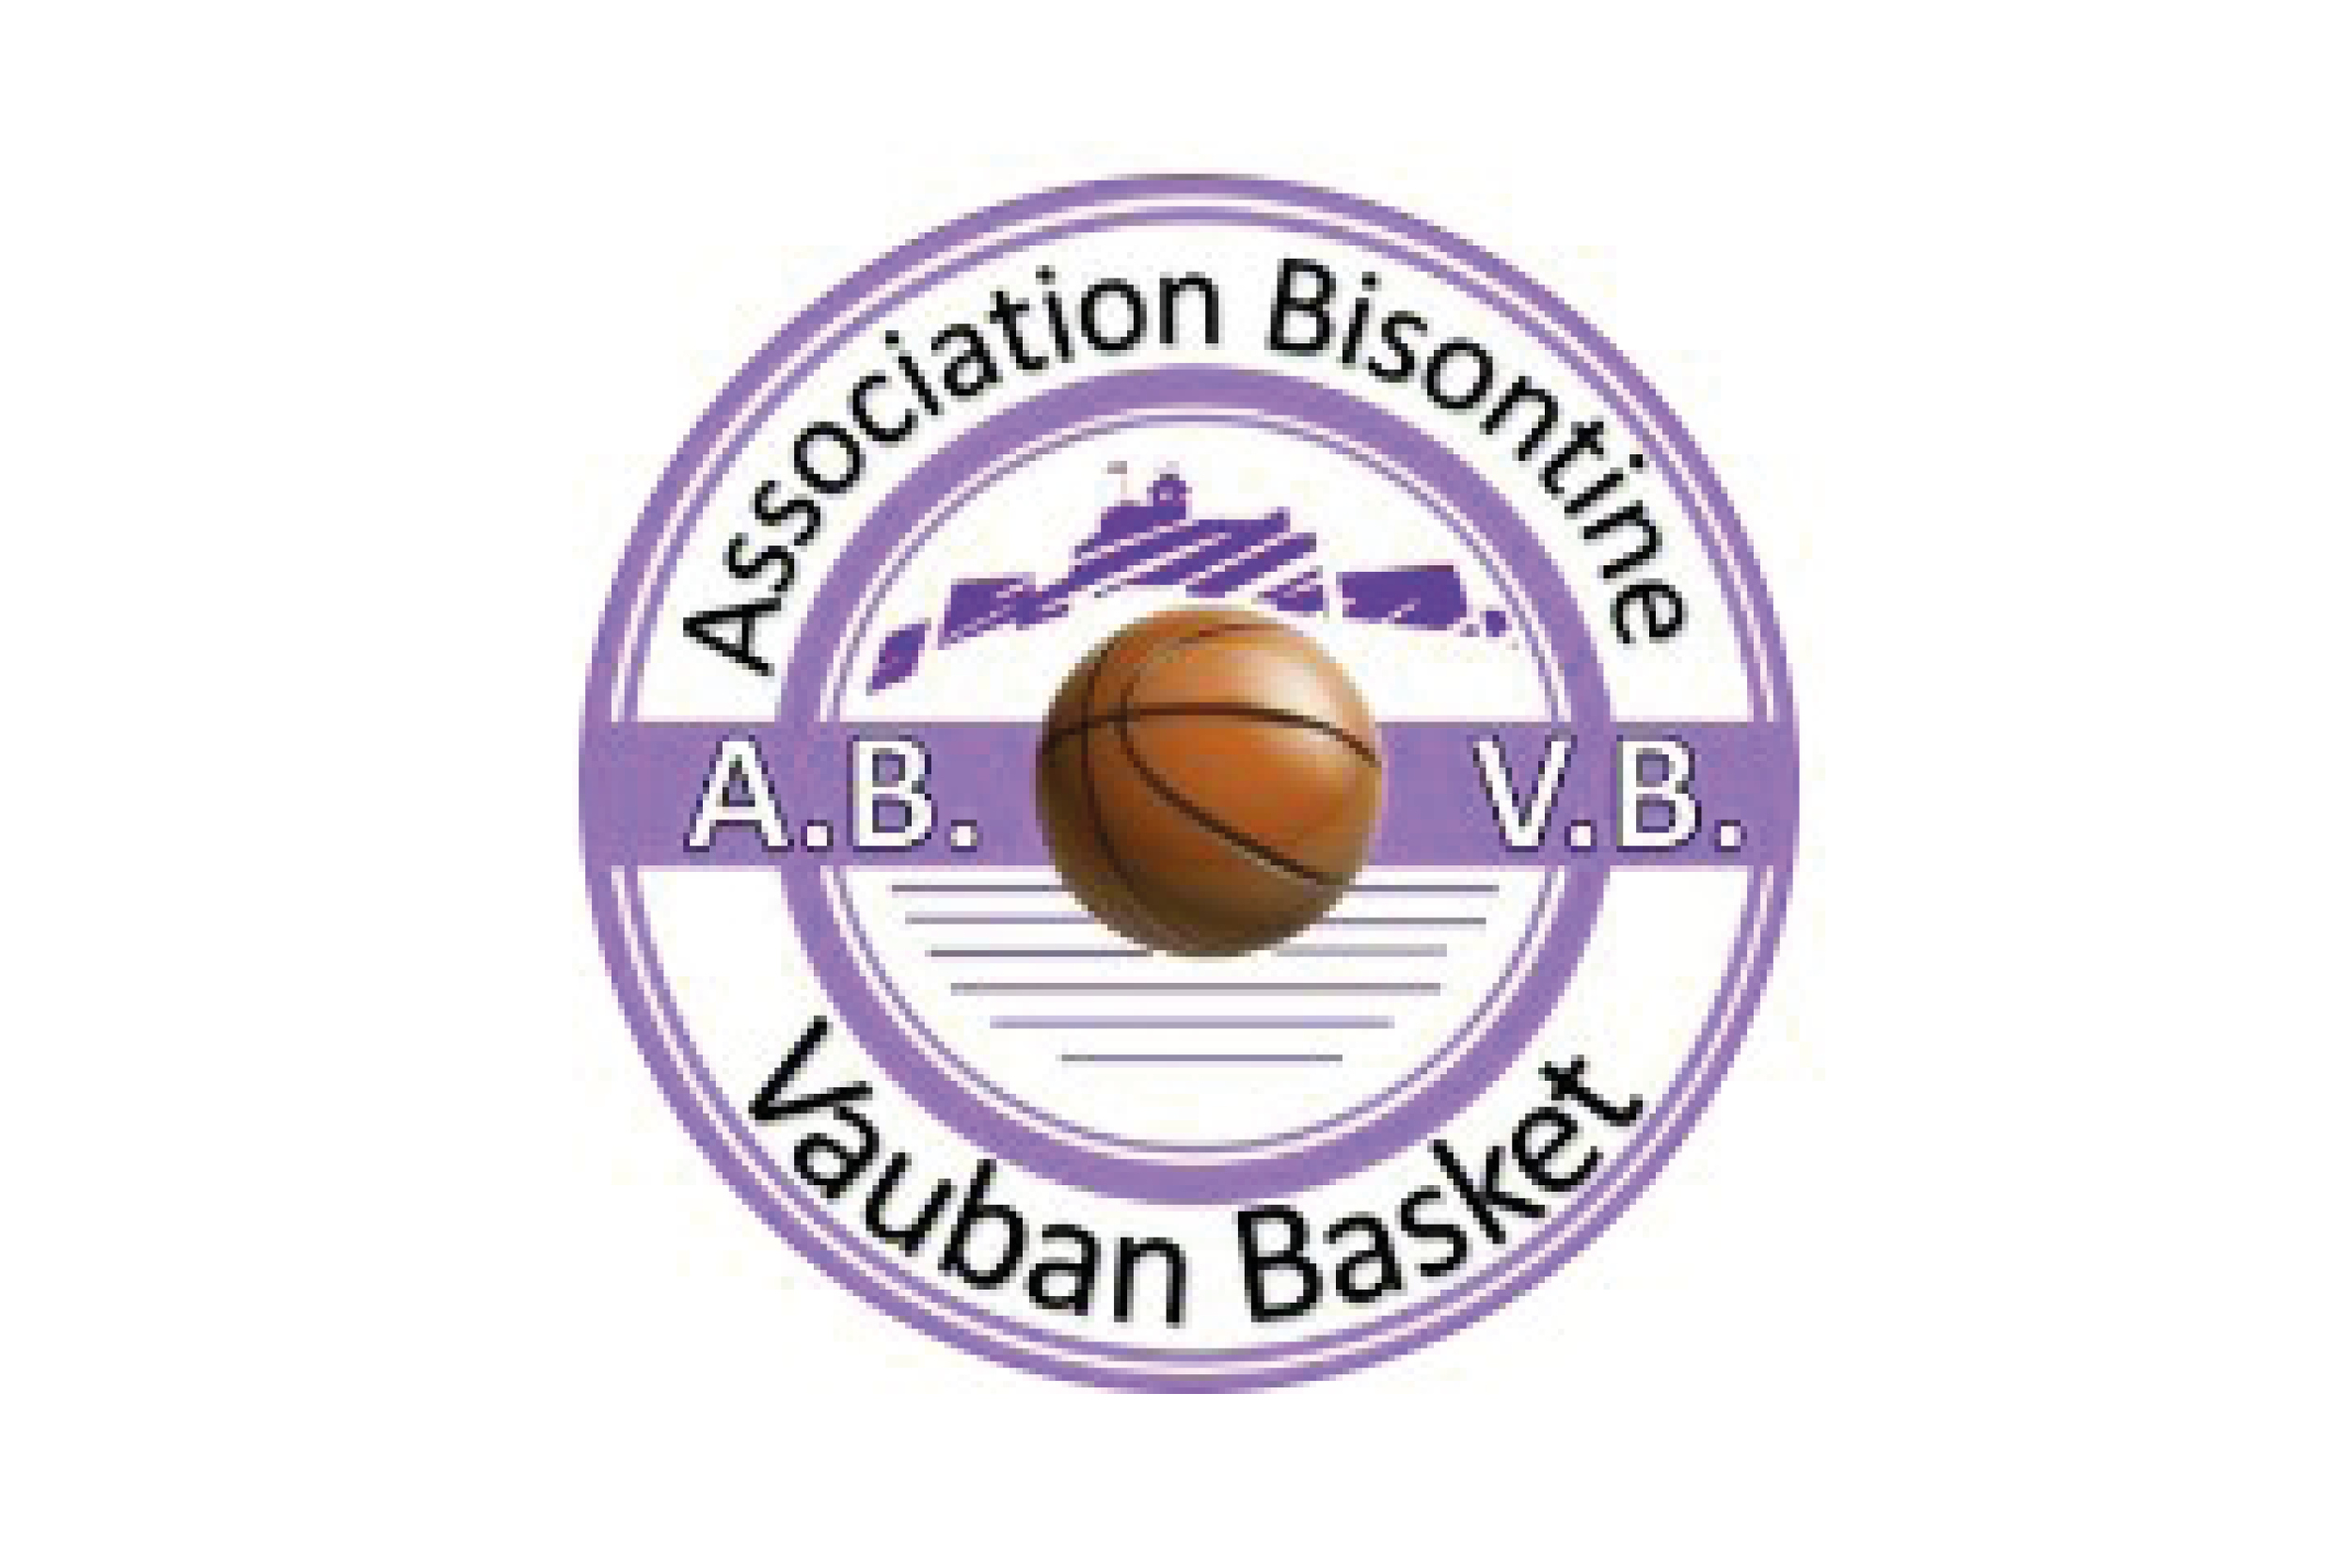 Association Bisontine Vauban Basket - logo